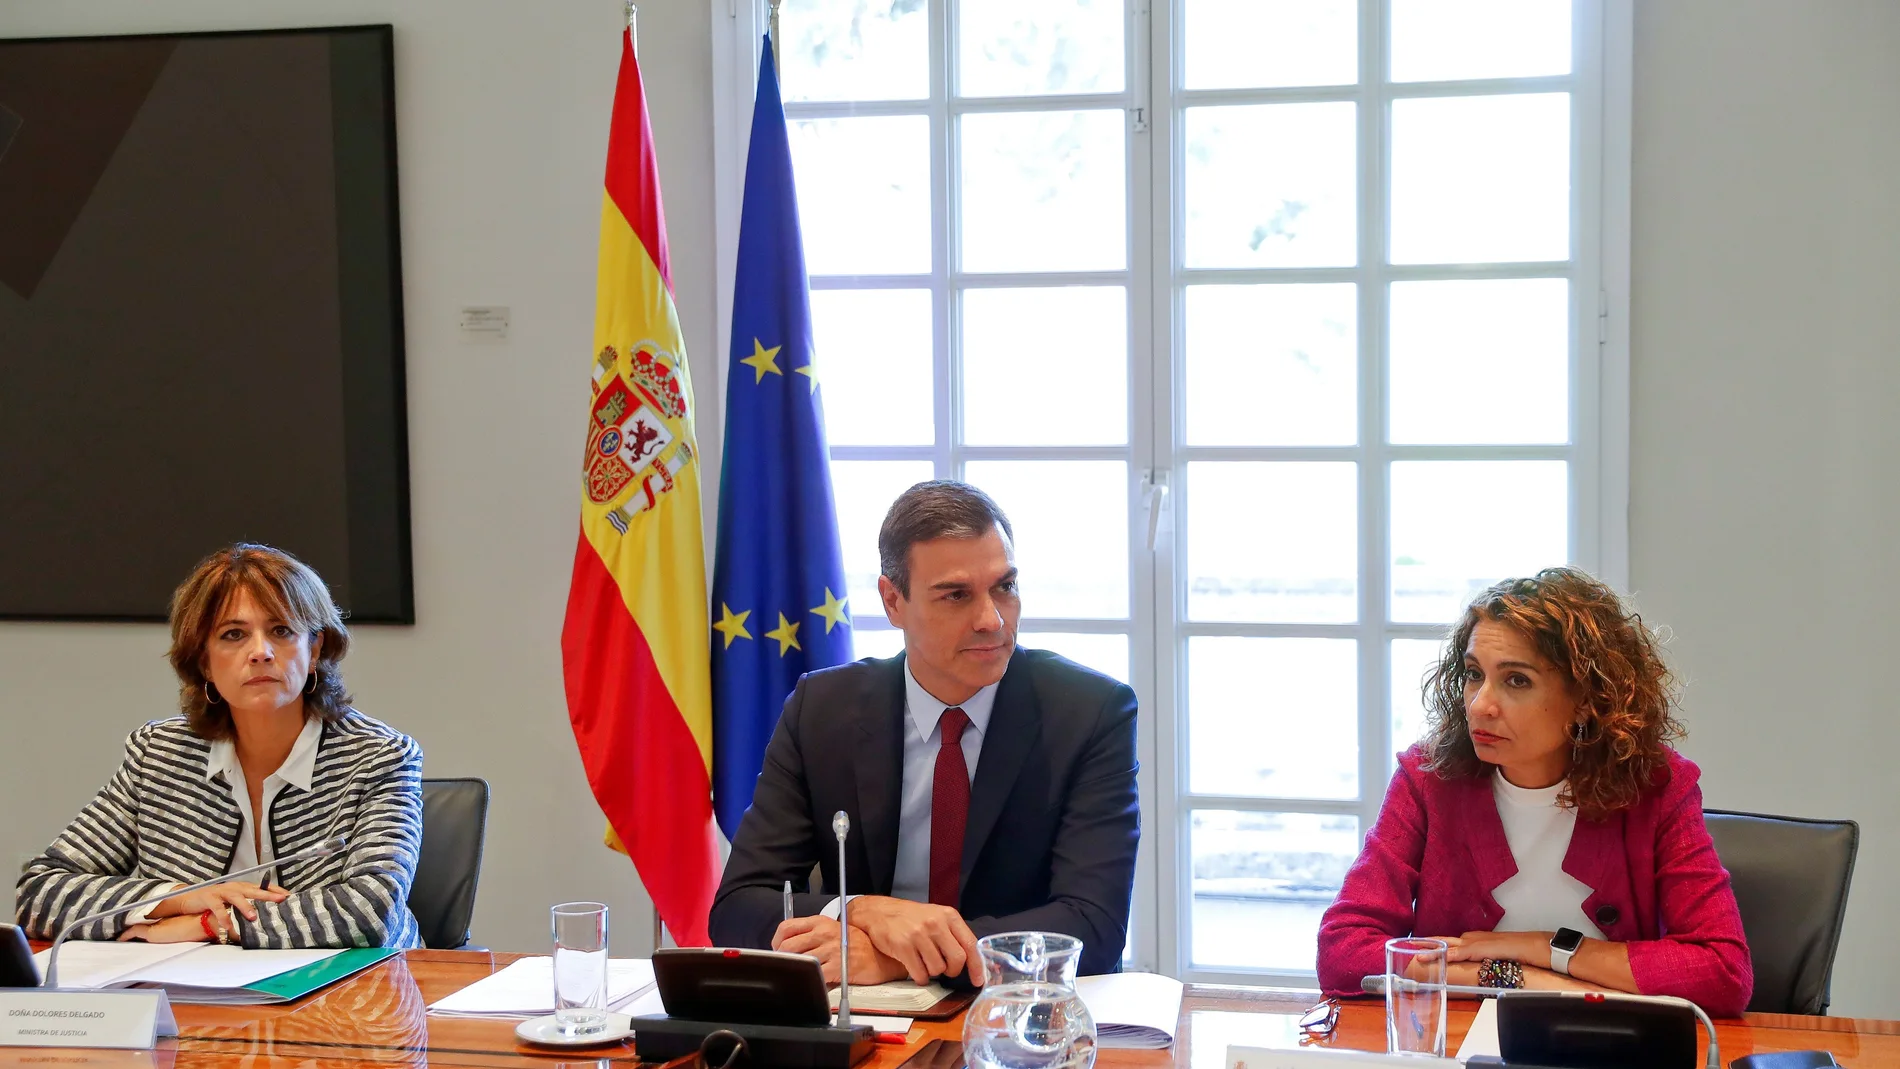 Pedro Sánchez preside una reunión de la Comisión interministerial para el seguimiento del Brexit